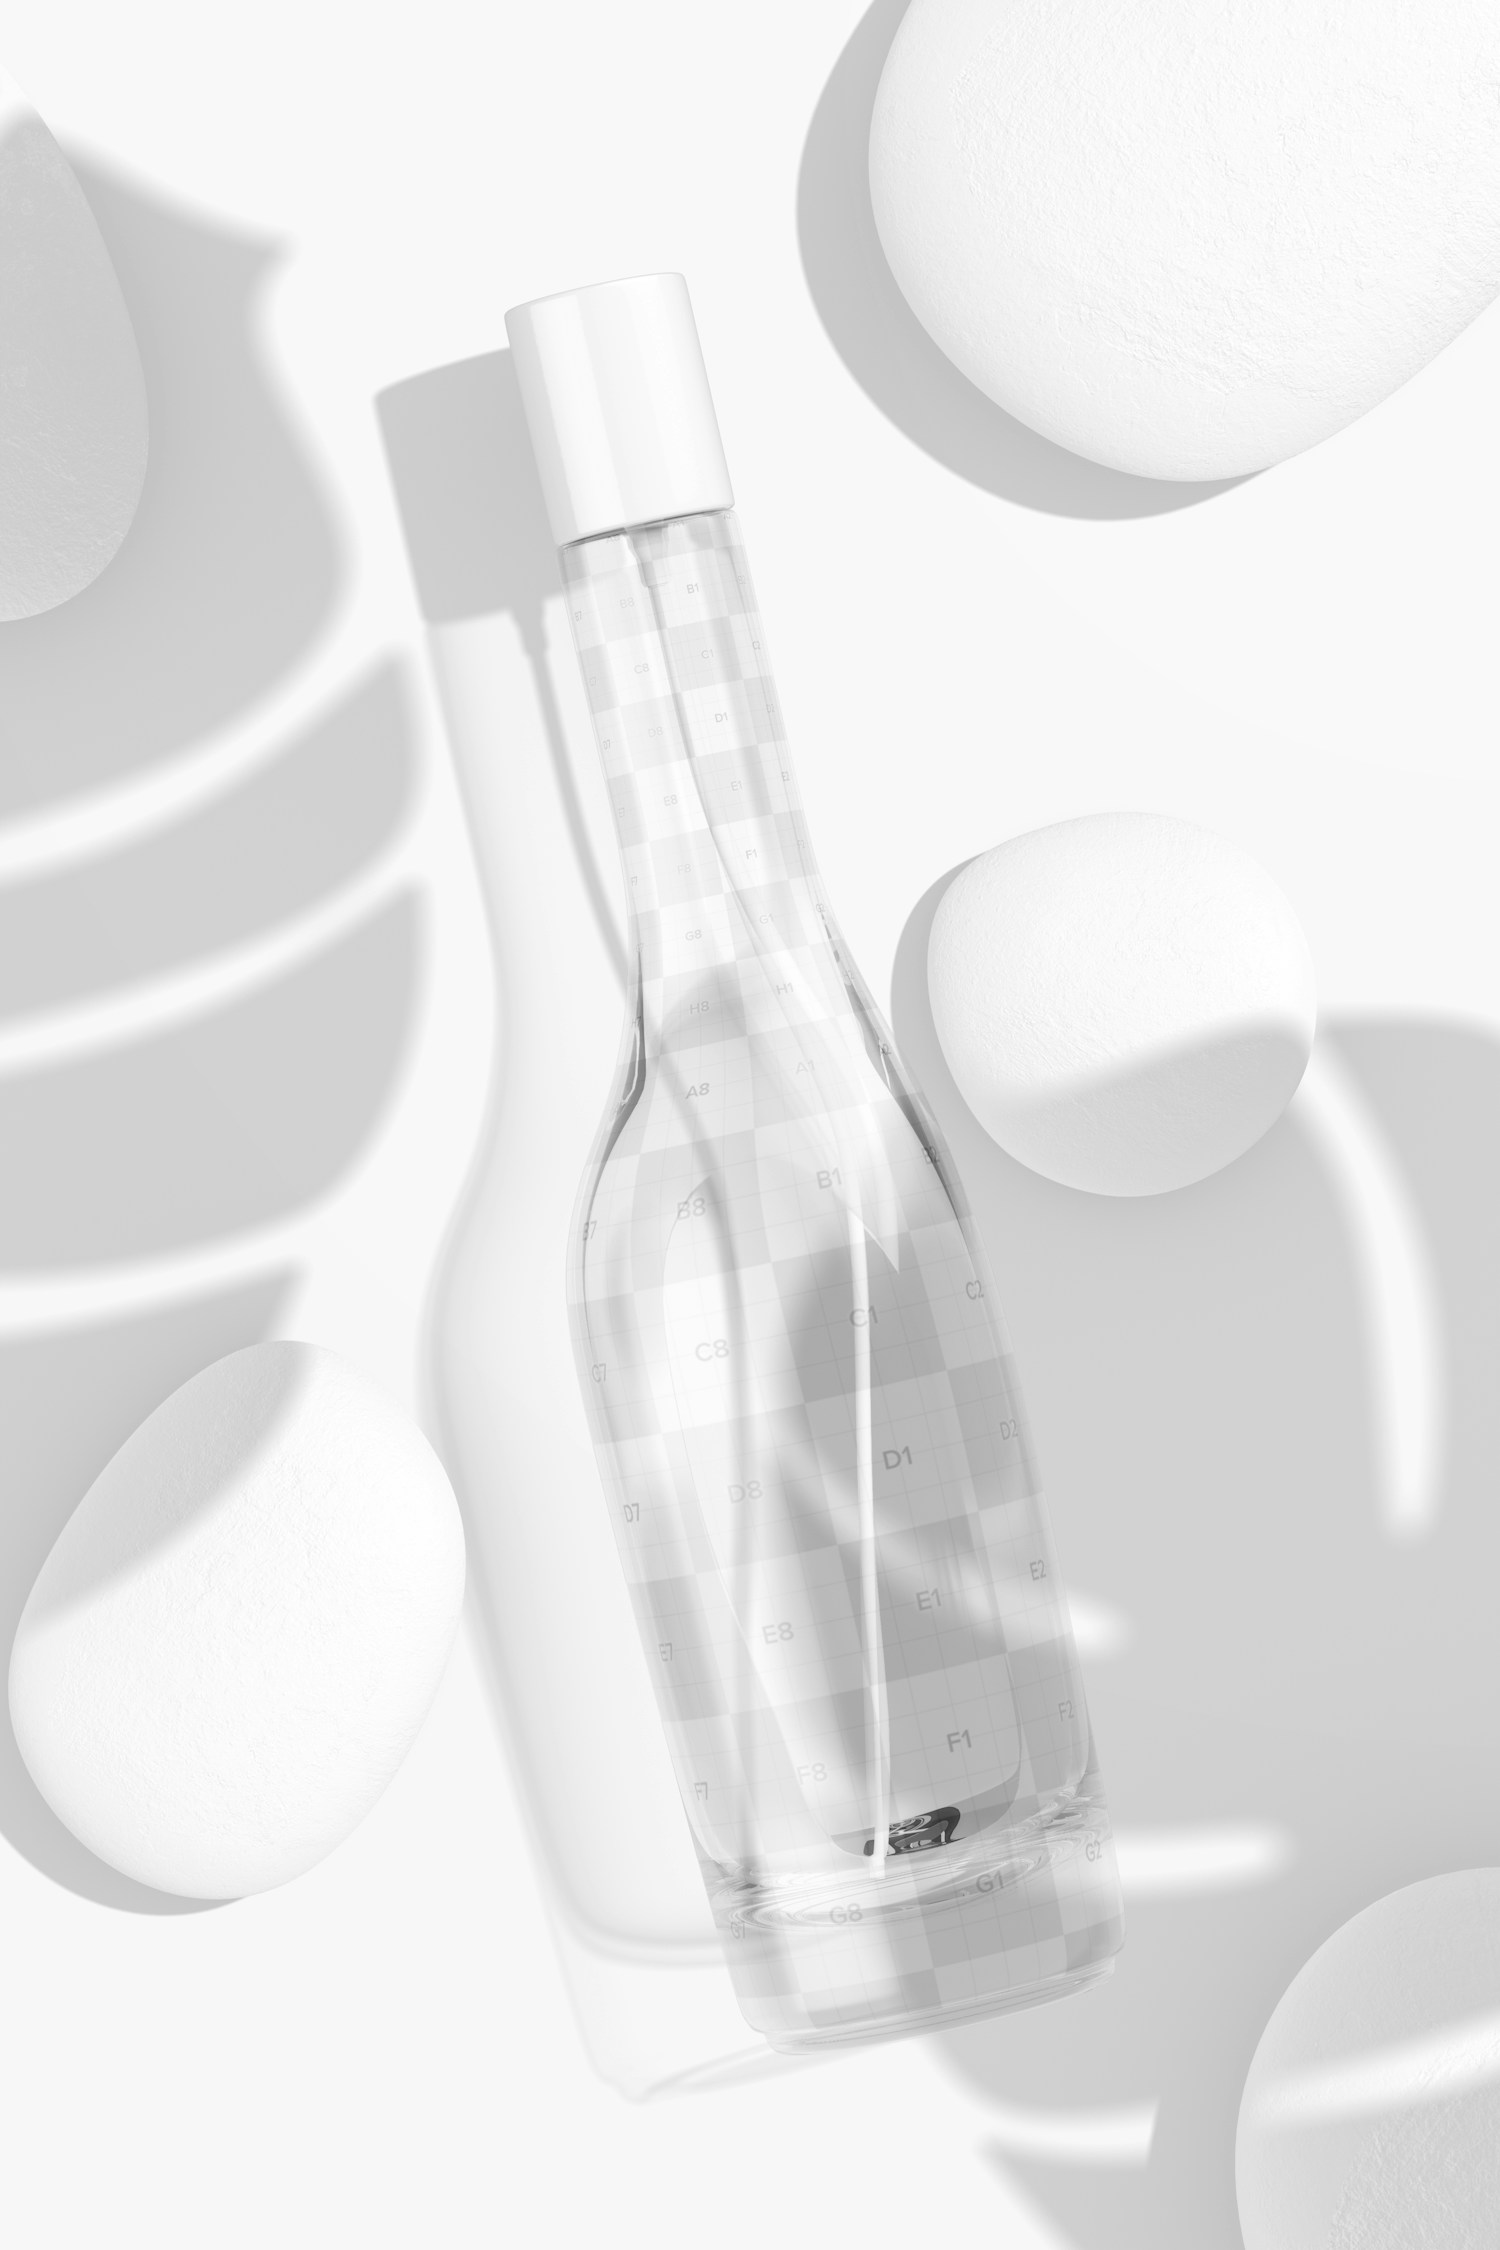 Asymmetrical Perfume Bottle Mockup, Top View